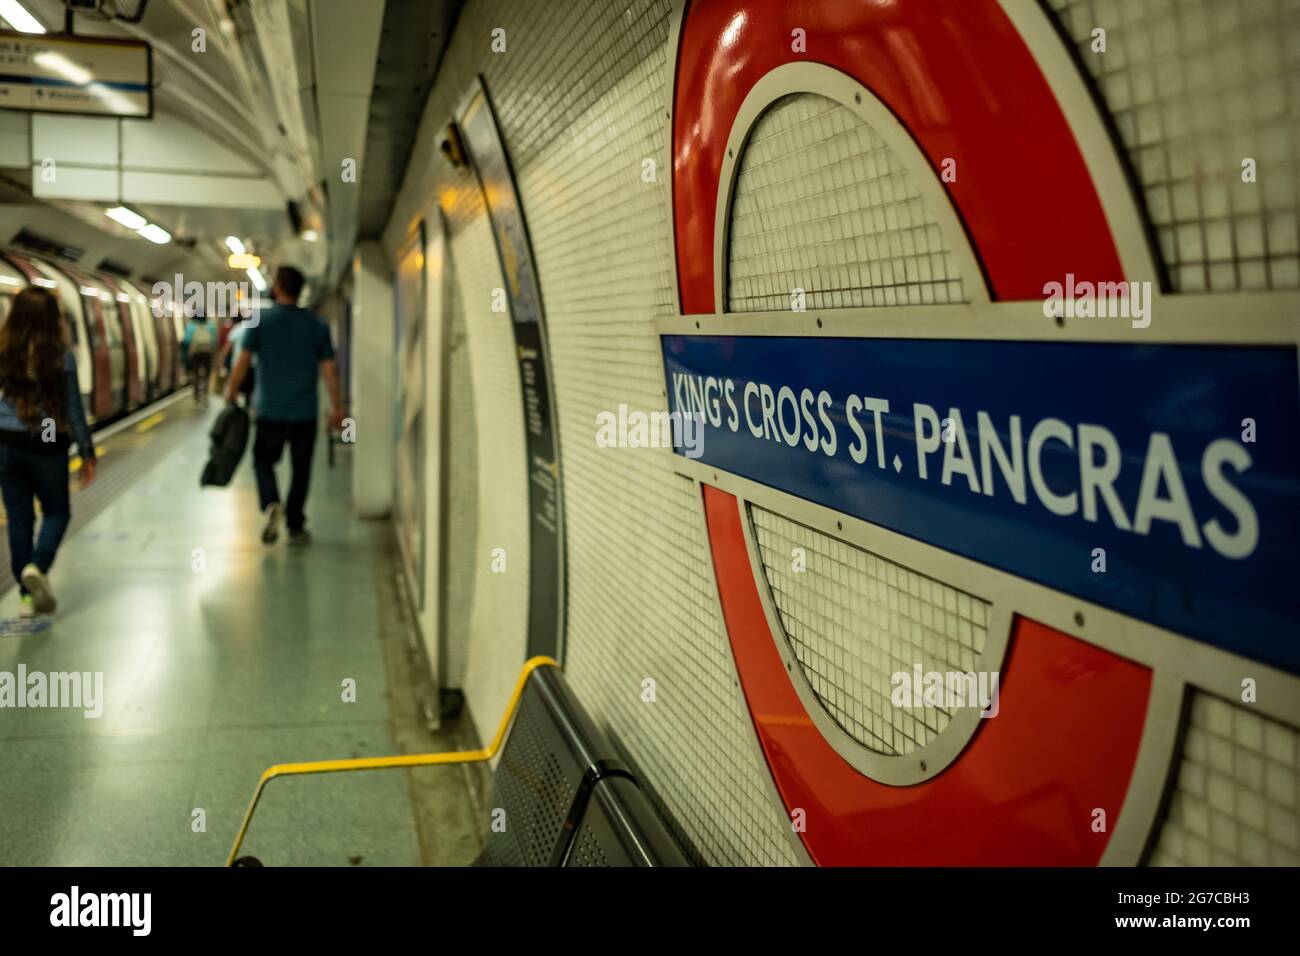 Londra - Luglio 2021: Piattaforma della stazione metropolitana Kingds Cross St Pancras London. Foto Stock